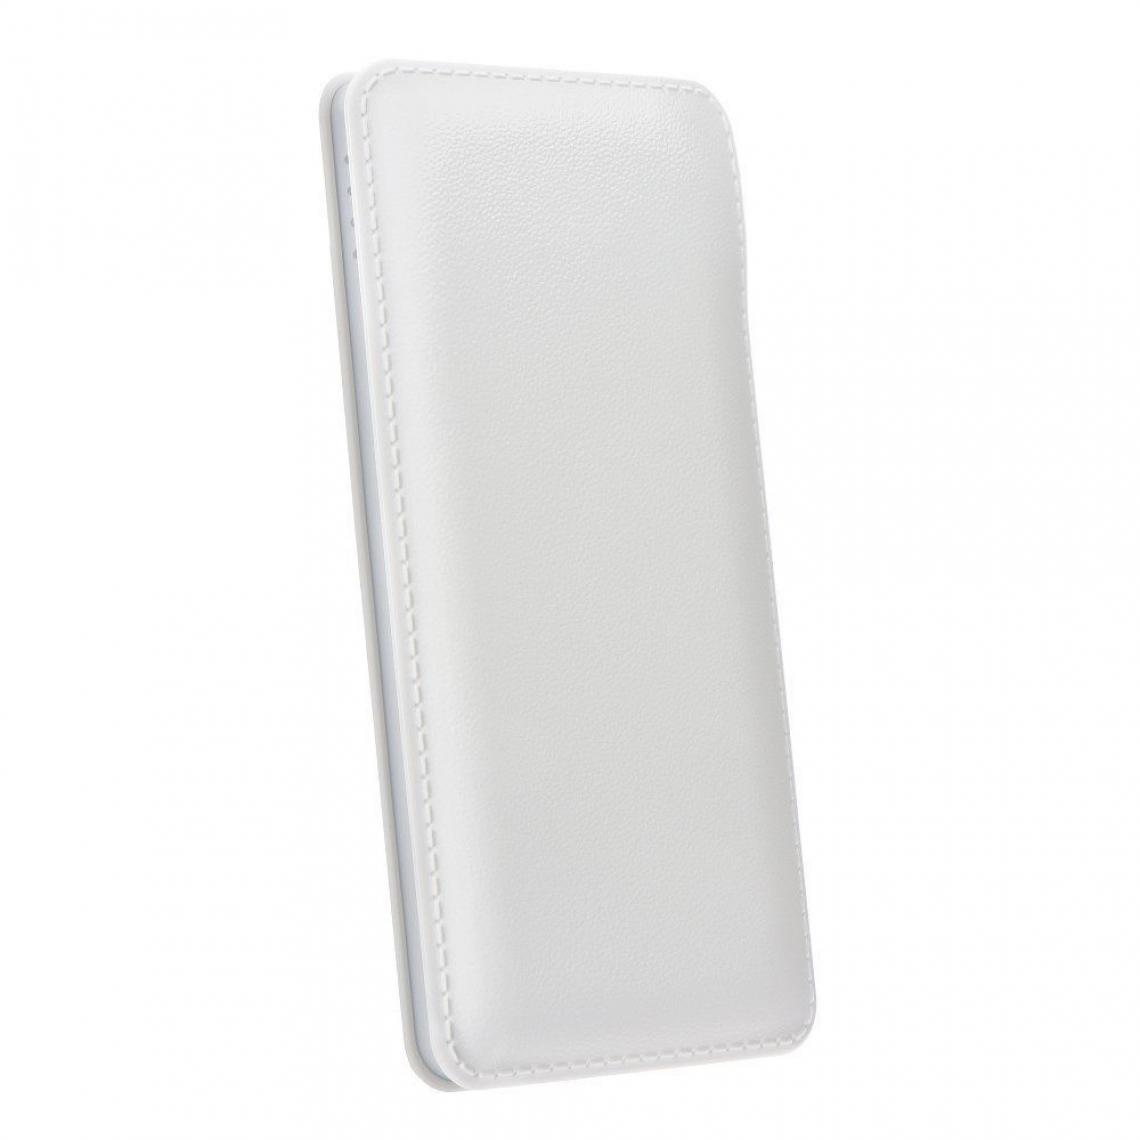 Ozzzo - Chargeur batterie externe 10000mAh powerbank ozzzo blanc pour Panasonic P9 - Autres accessoires smartphone